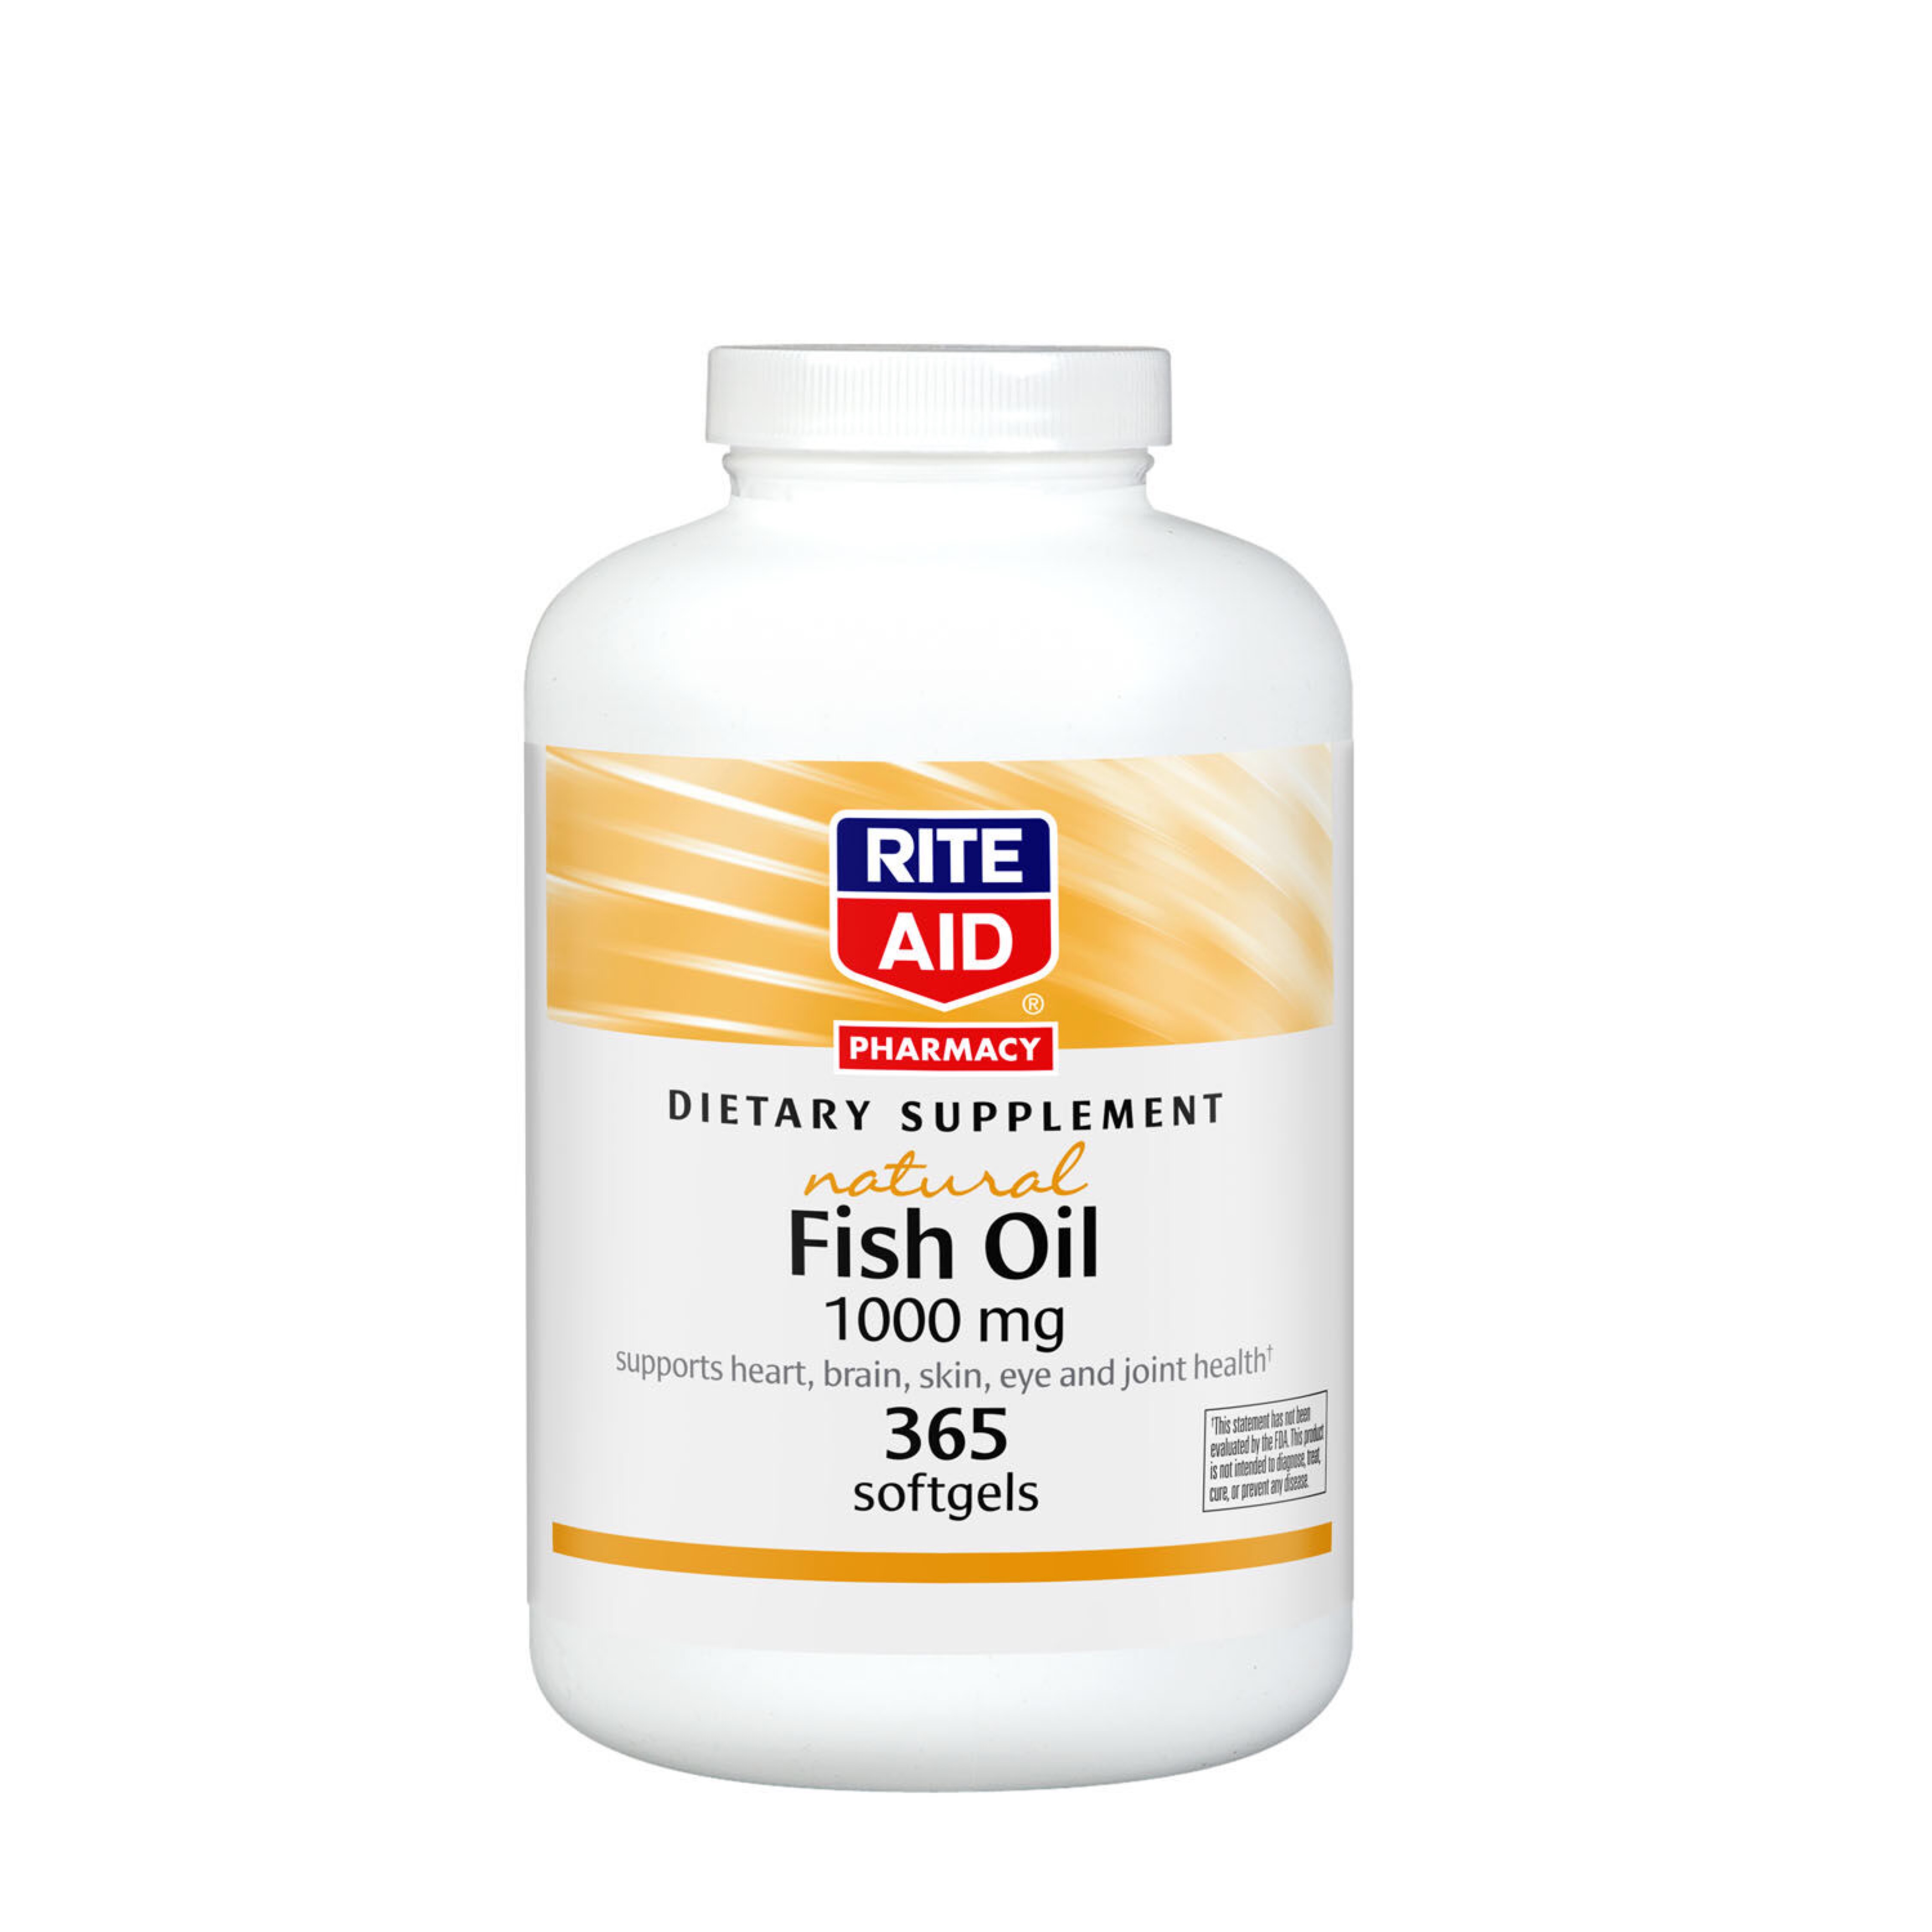 RITE AID NATURAL FISH OIL SOFTGELS – 365 SOFTGELS